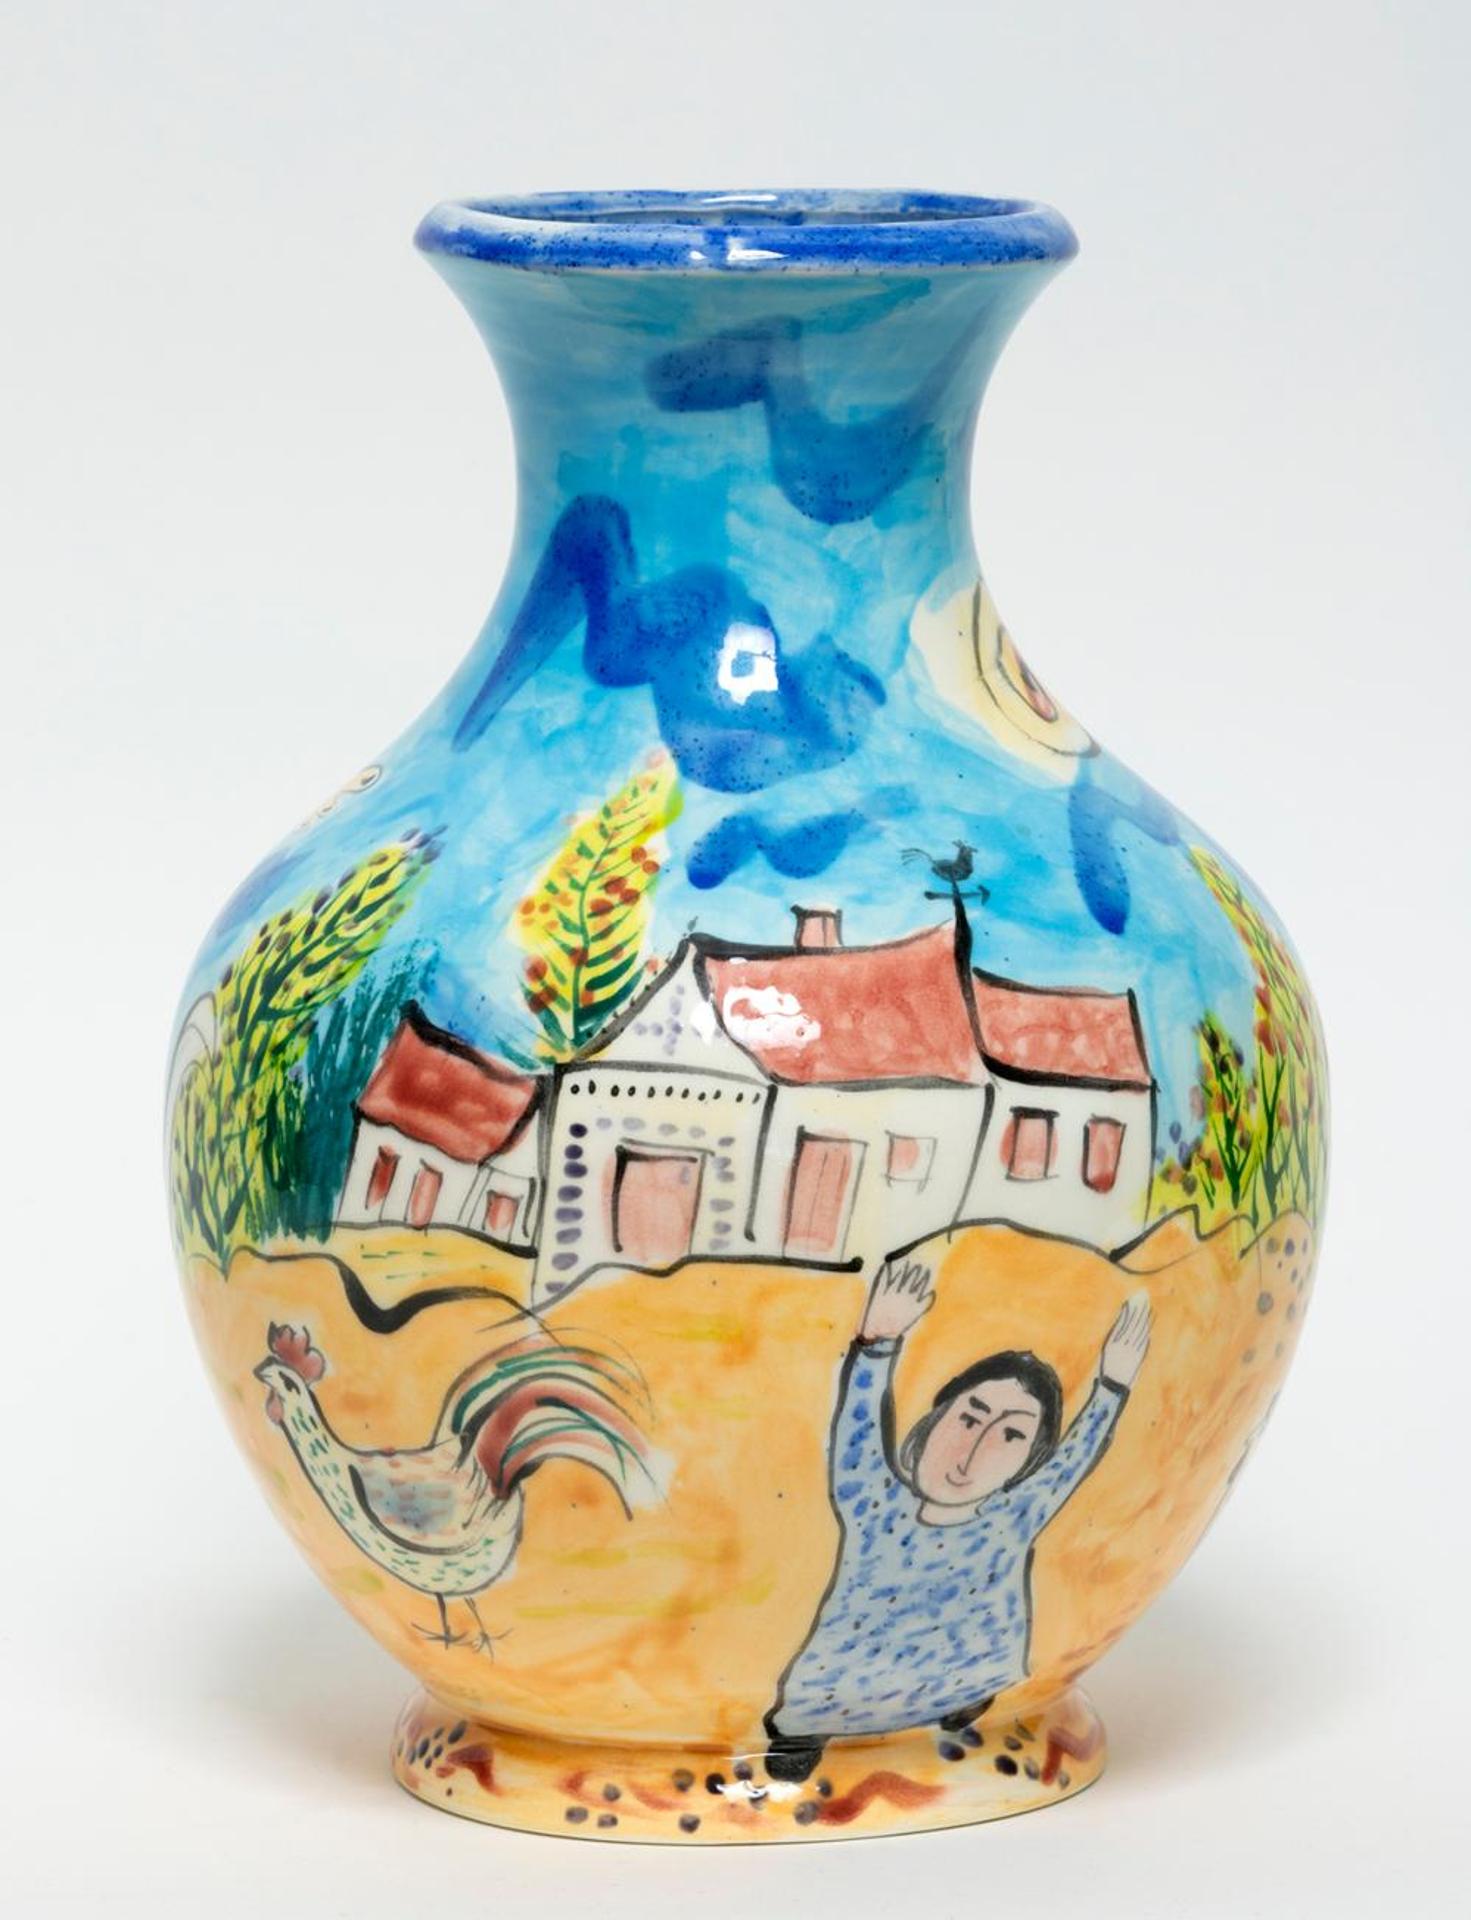 Jose Ventura (1955) - Vase